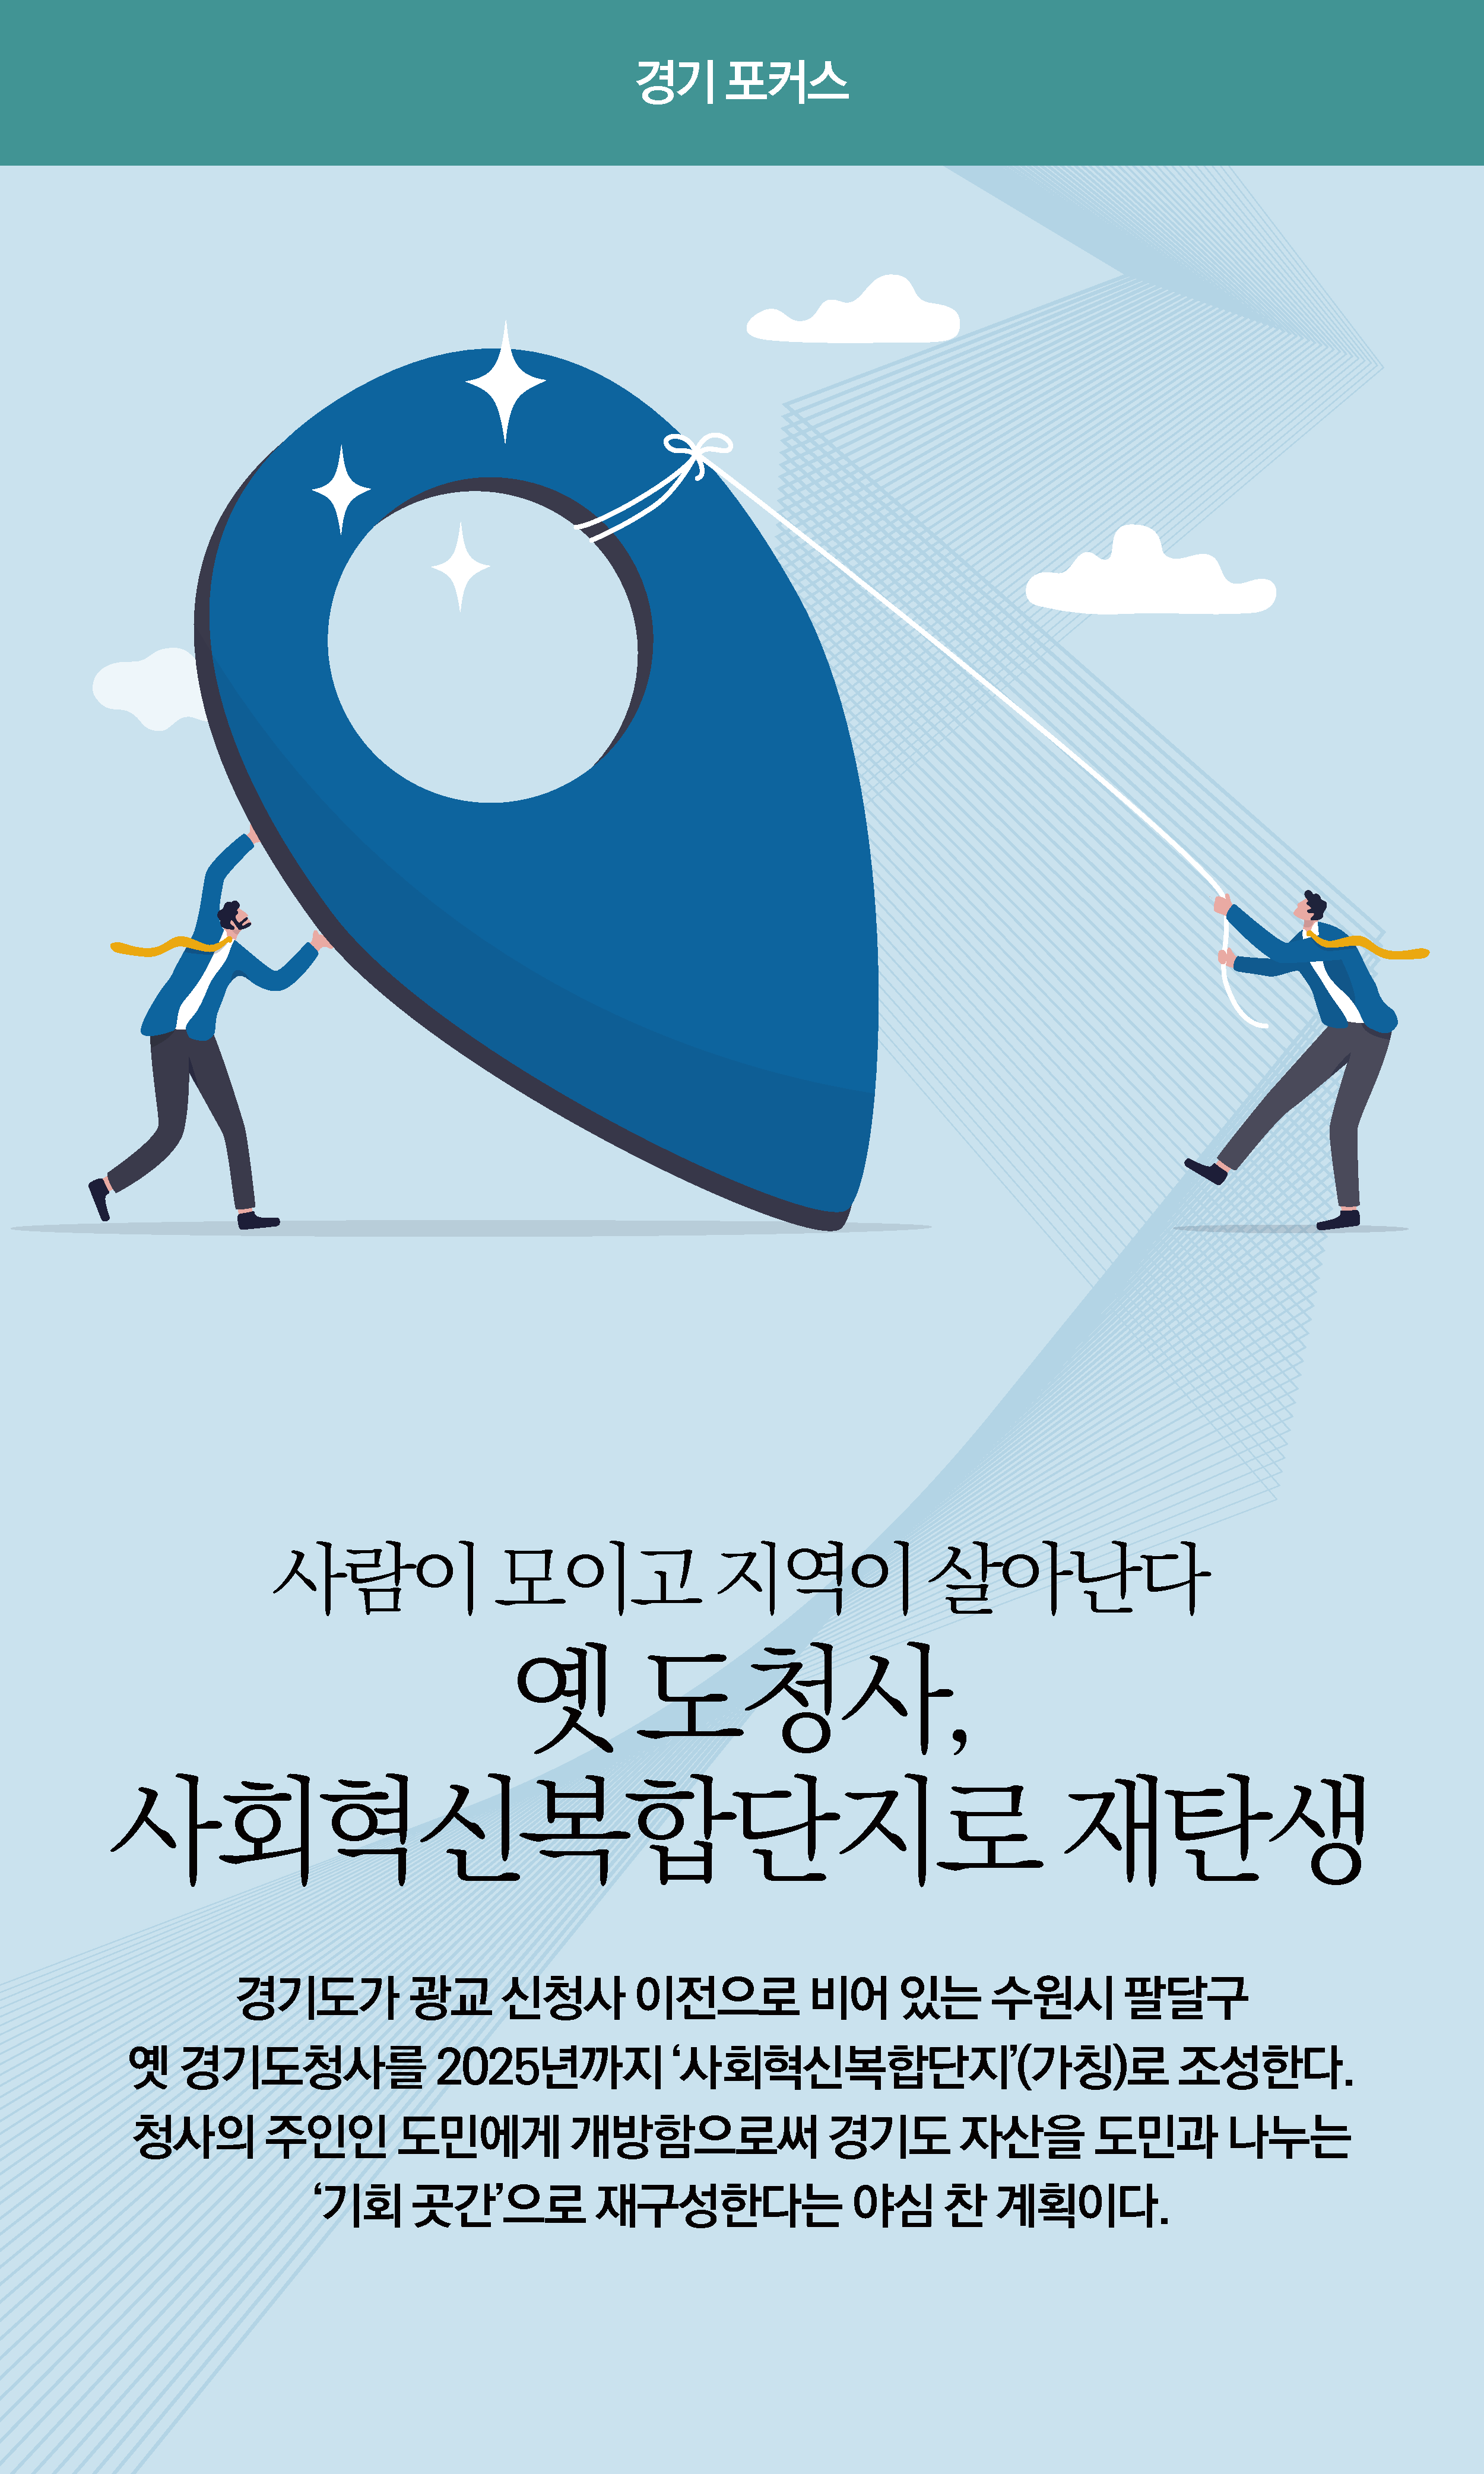 경기도 사회혁신복합단지